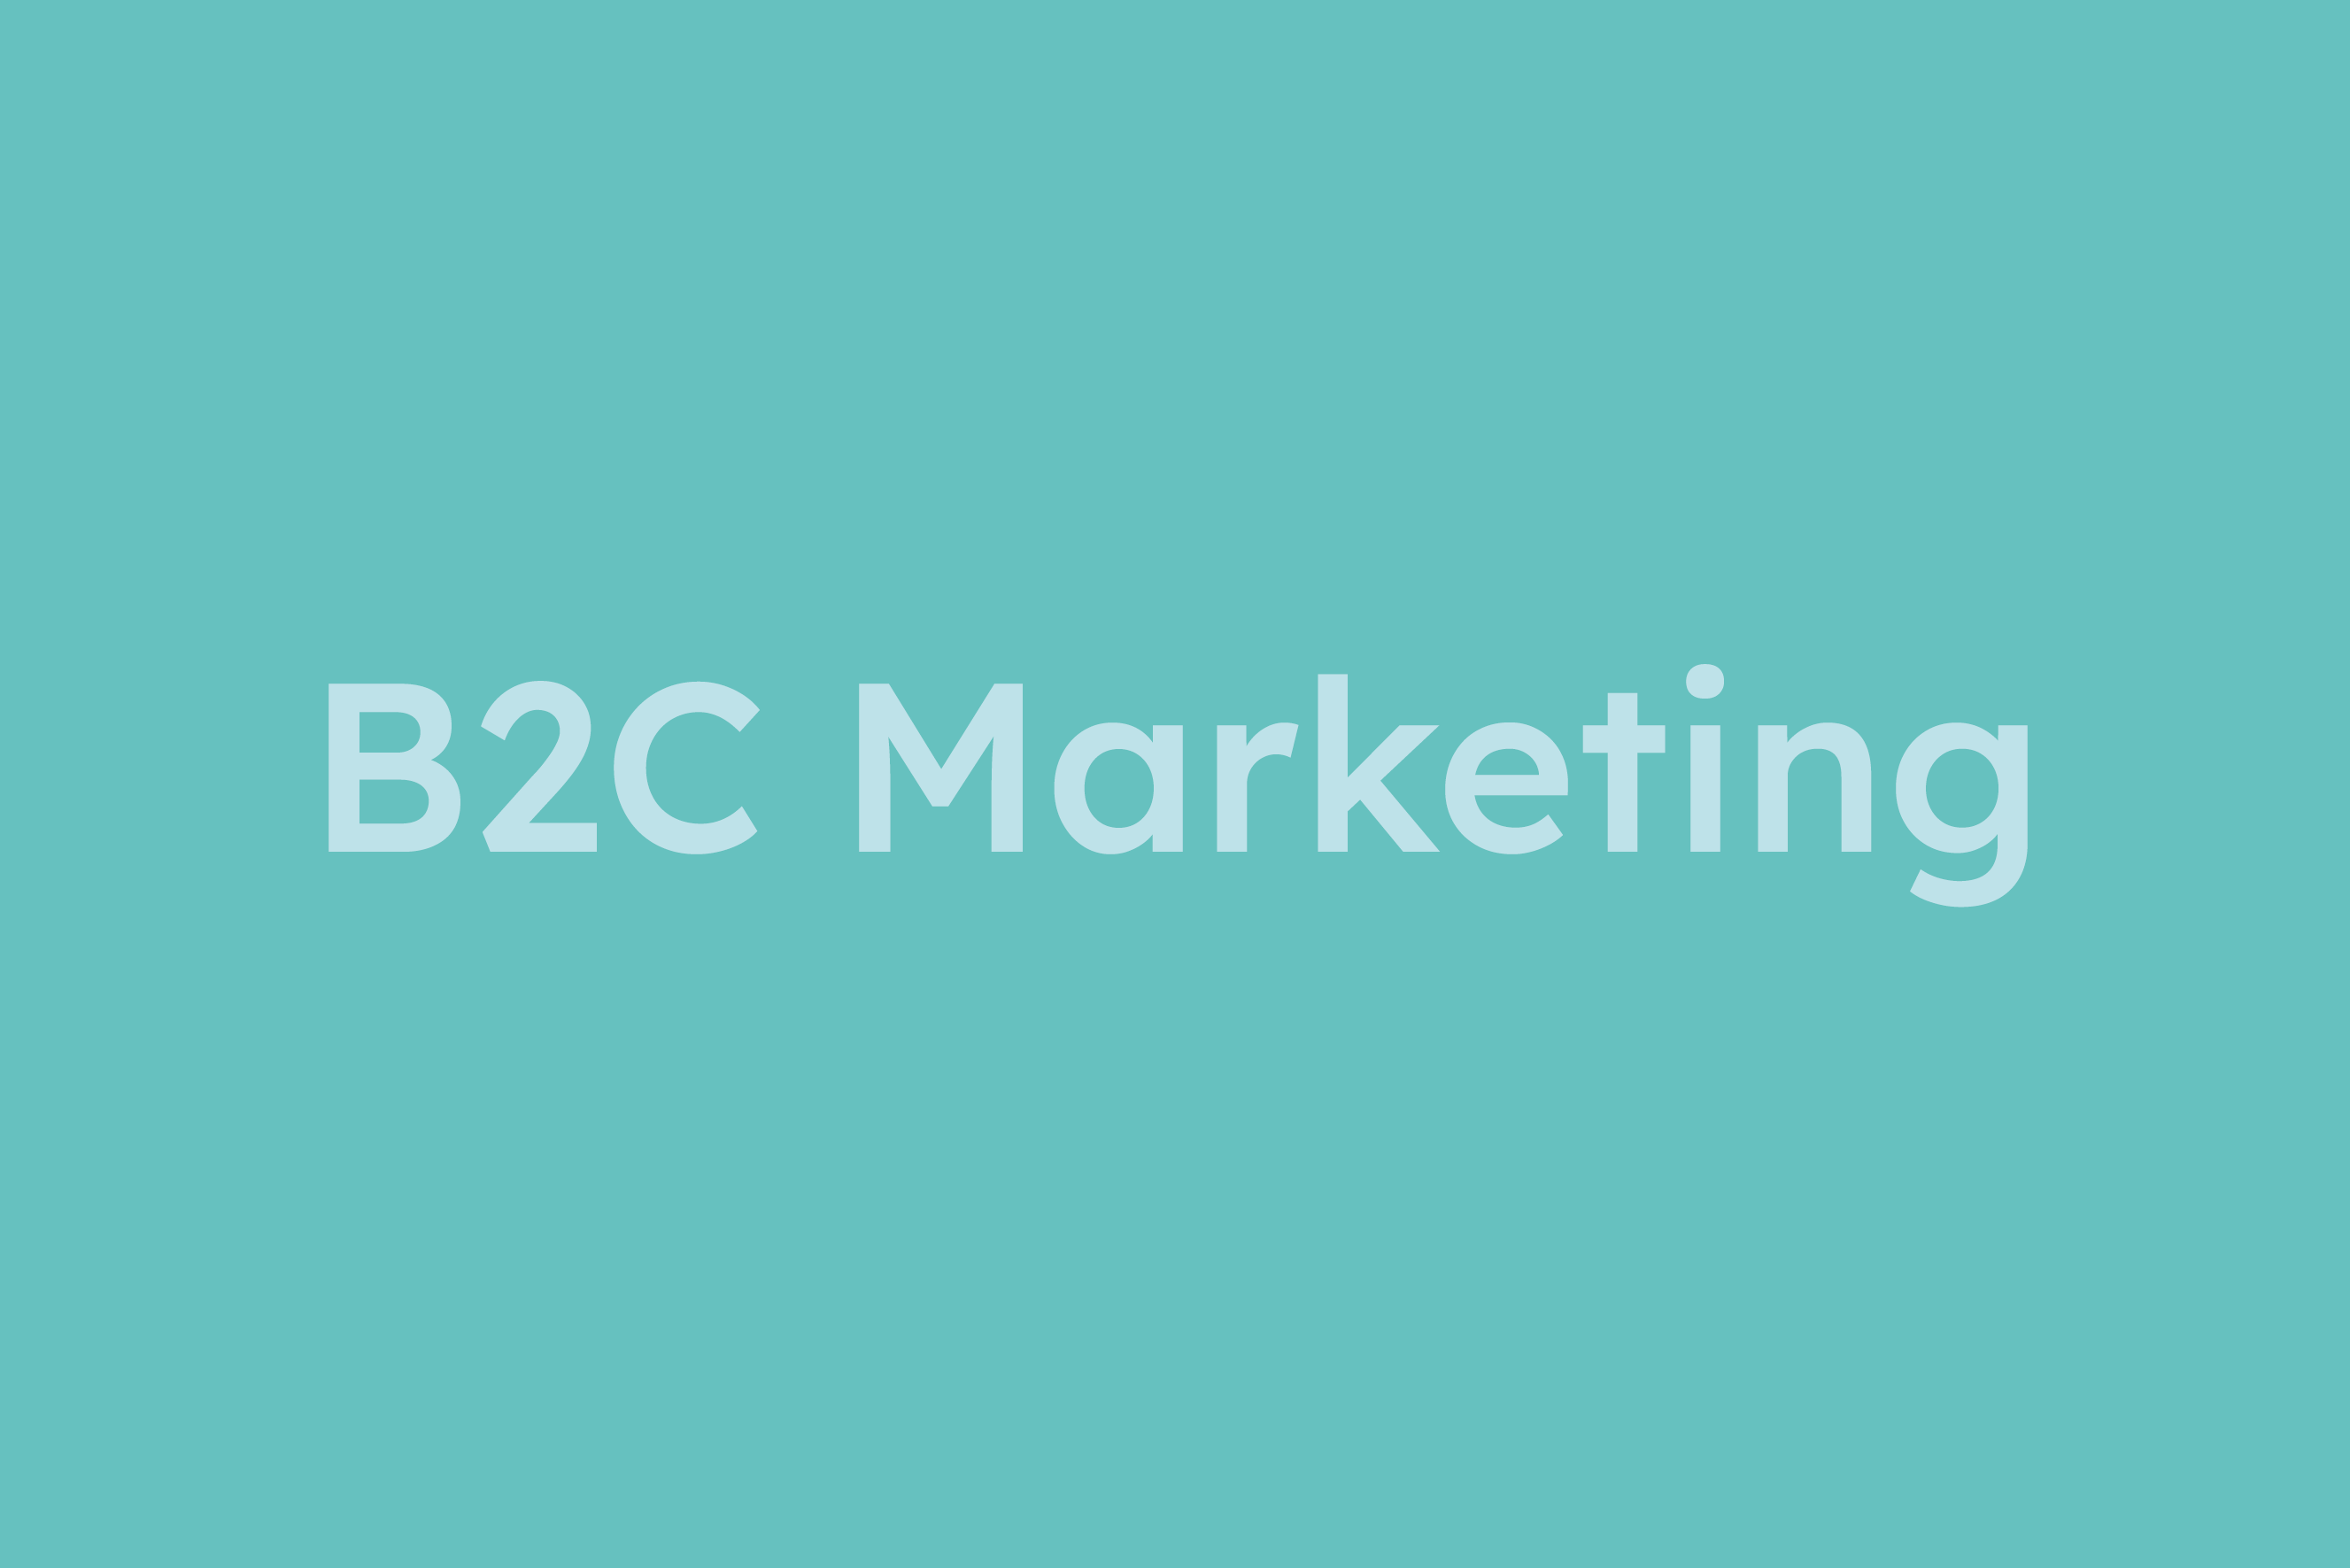 B2C Marketing erklärt im Glossar von Campaign